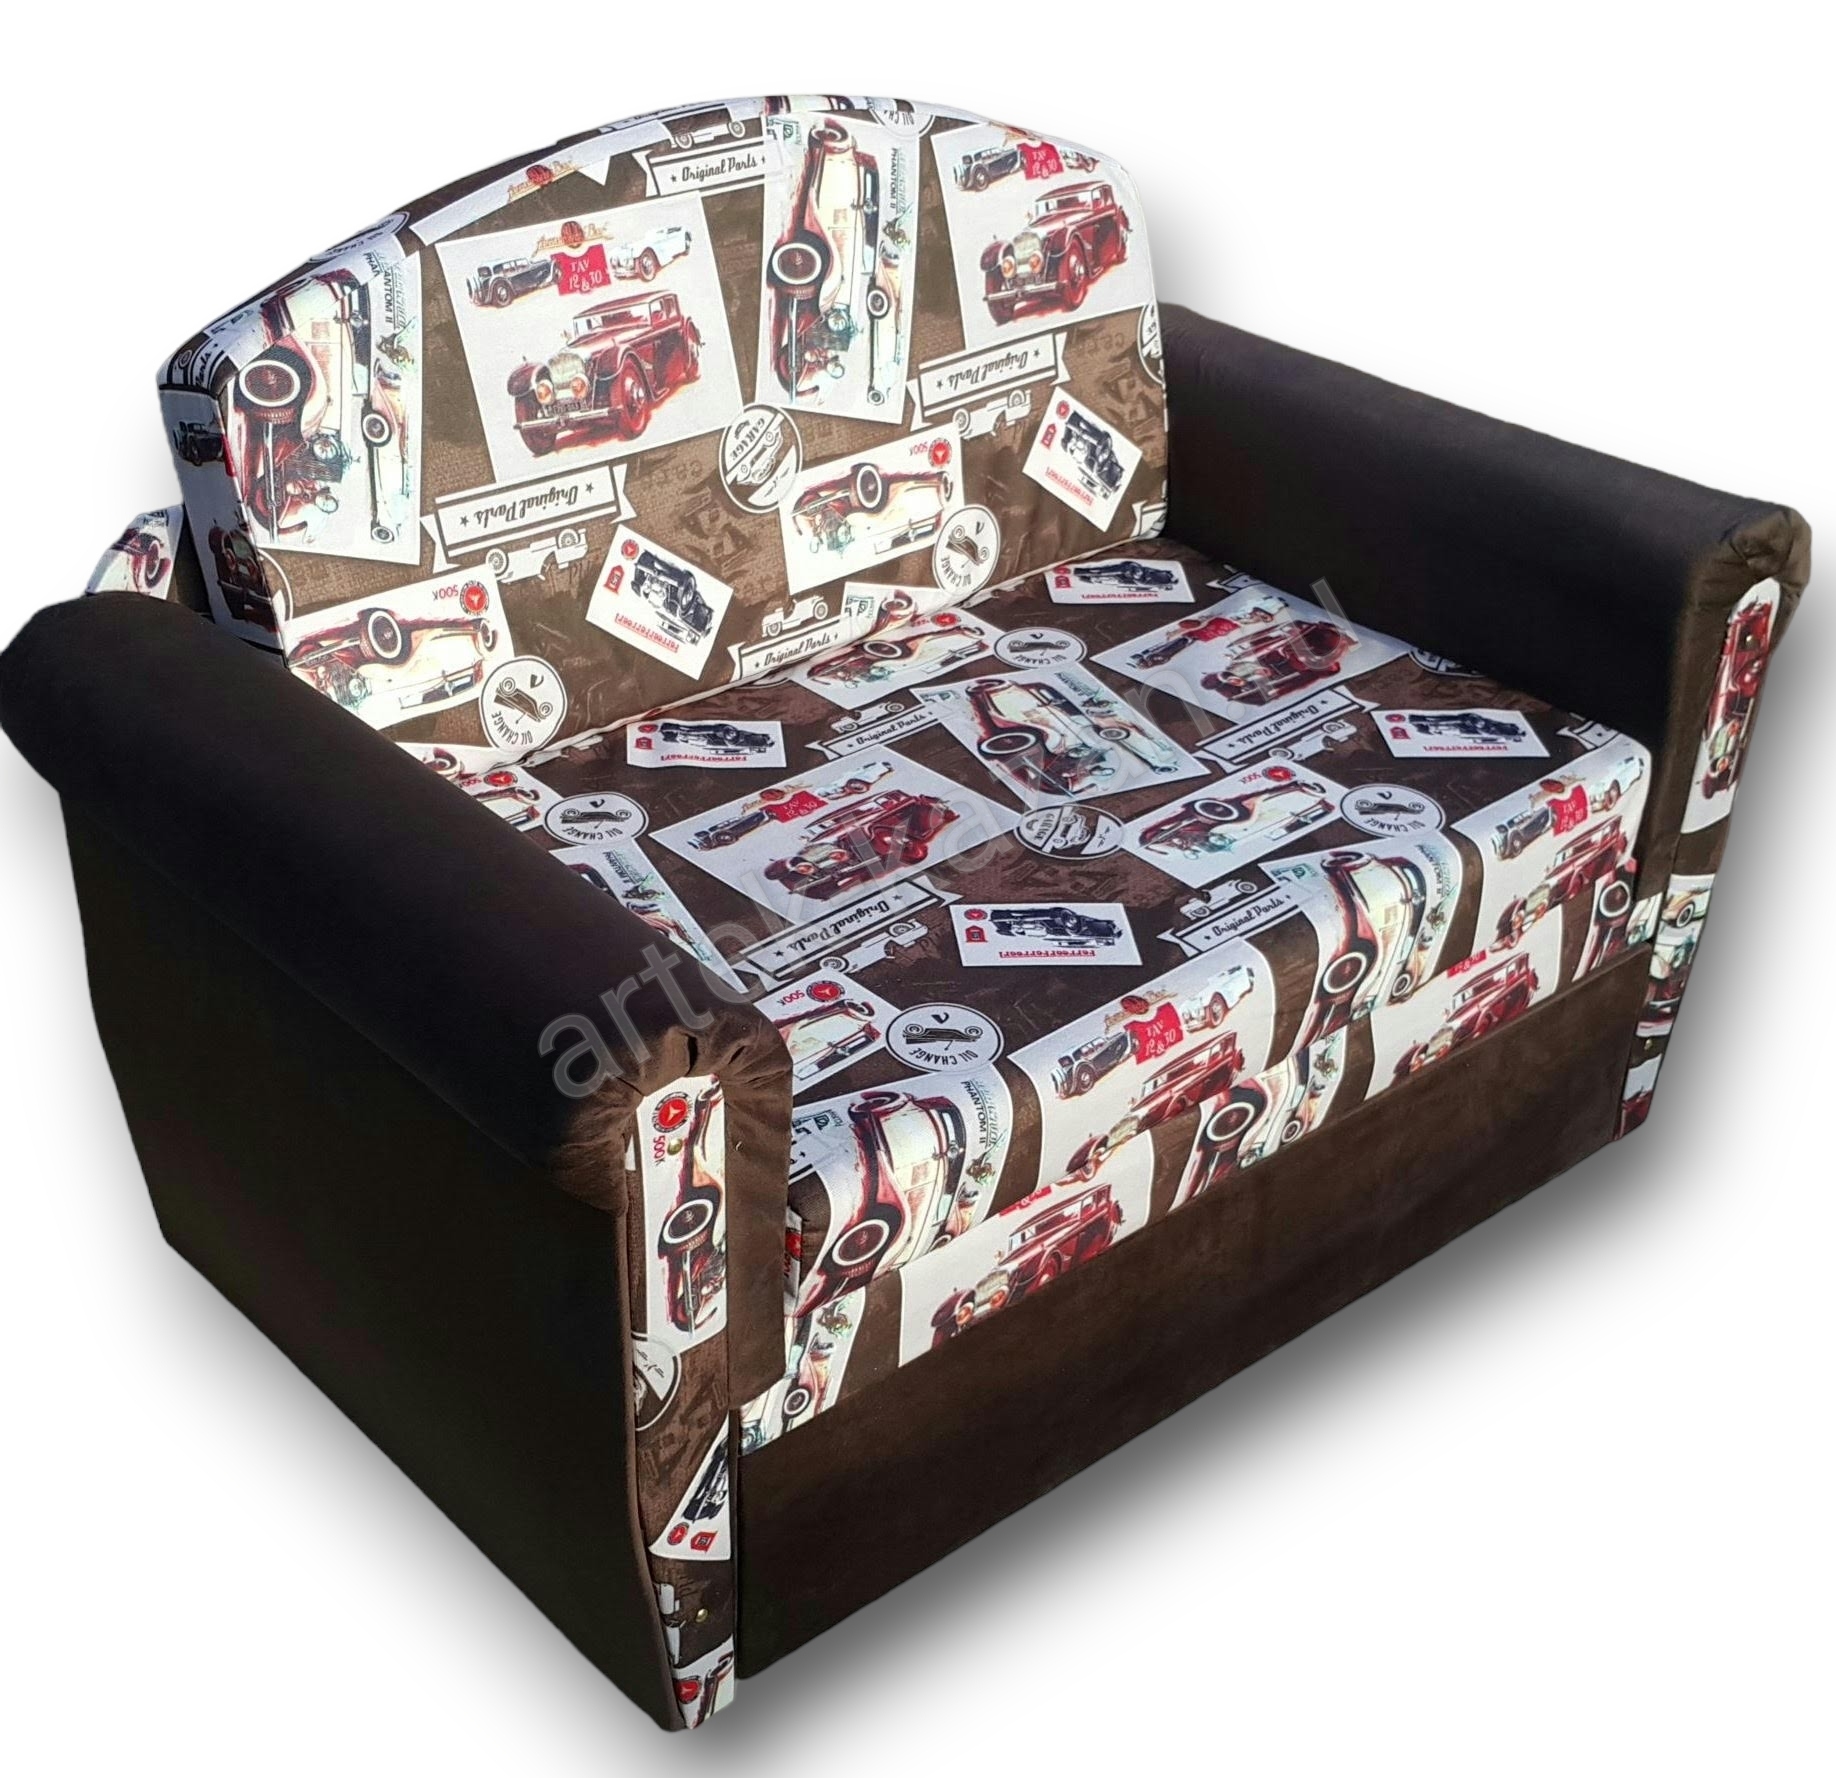 впередвыкатной диван Лика фото № 26. Купить недорогой диван по низкой цене от производителя можно у нас.